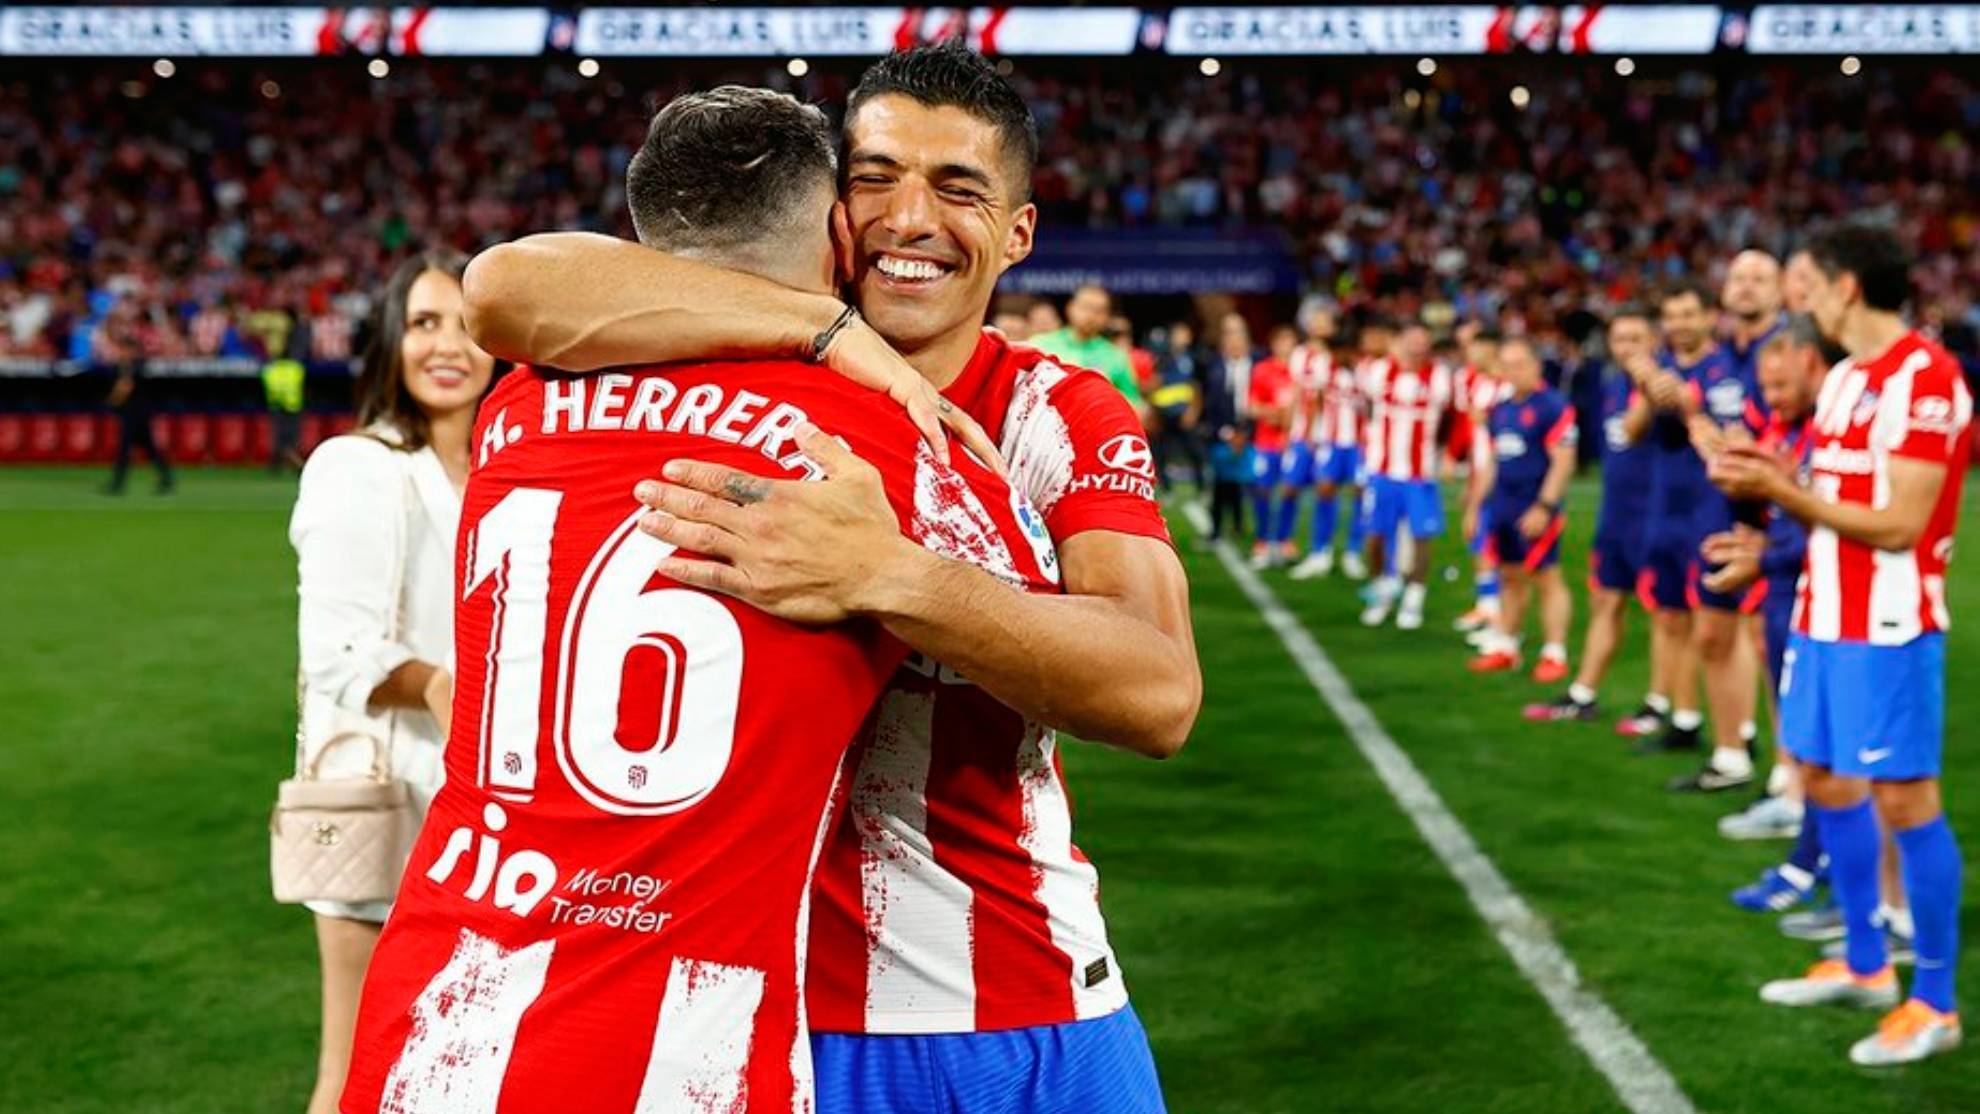 Atlético de Madrid: La emotiva despedida de Luis Suárez y Herrera en el  Wanda Metropolitano | Marca